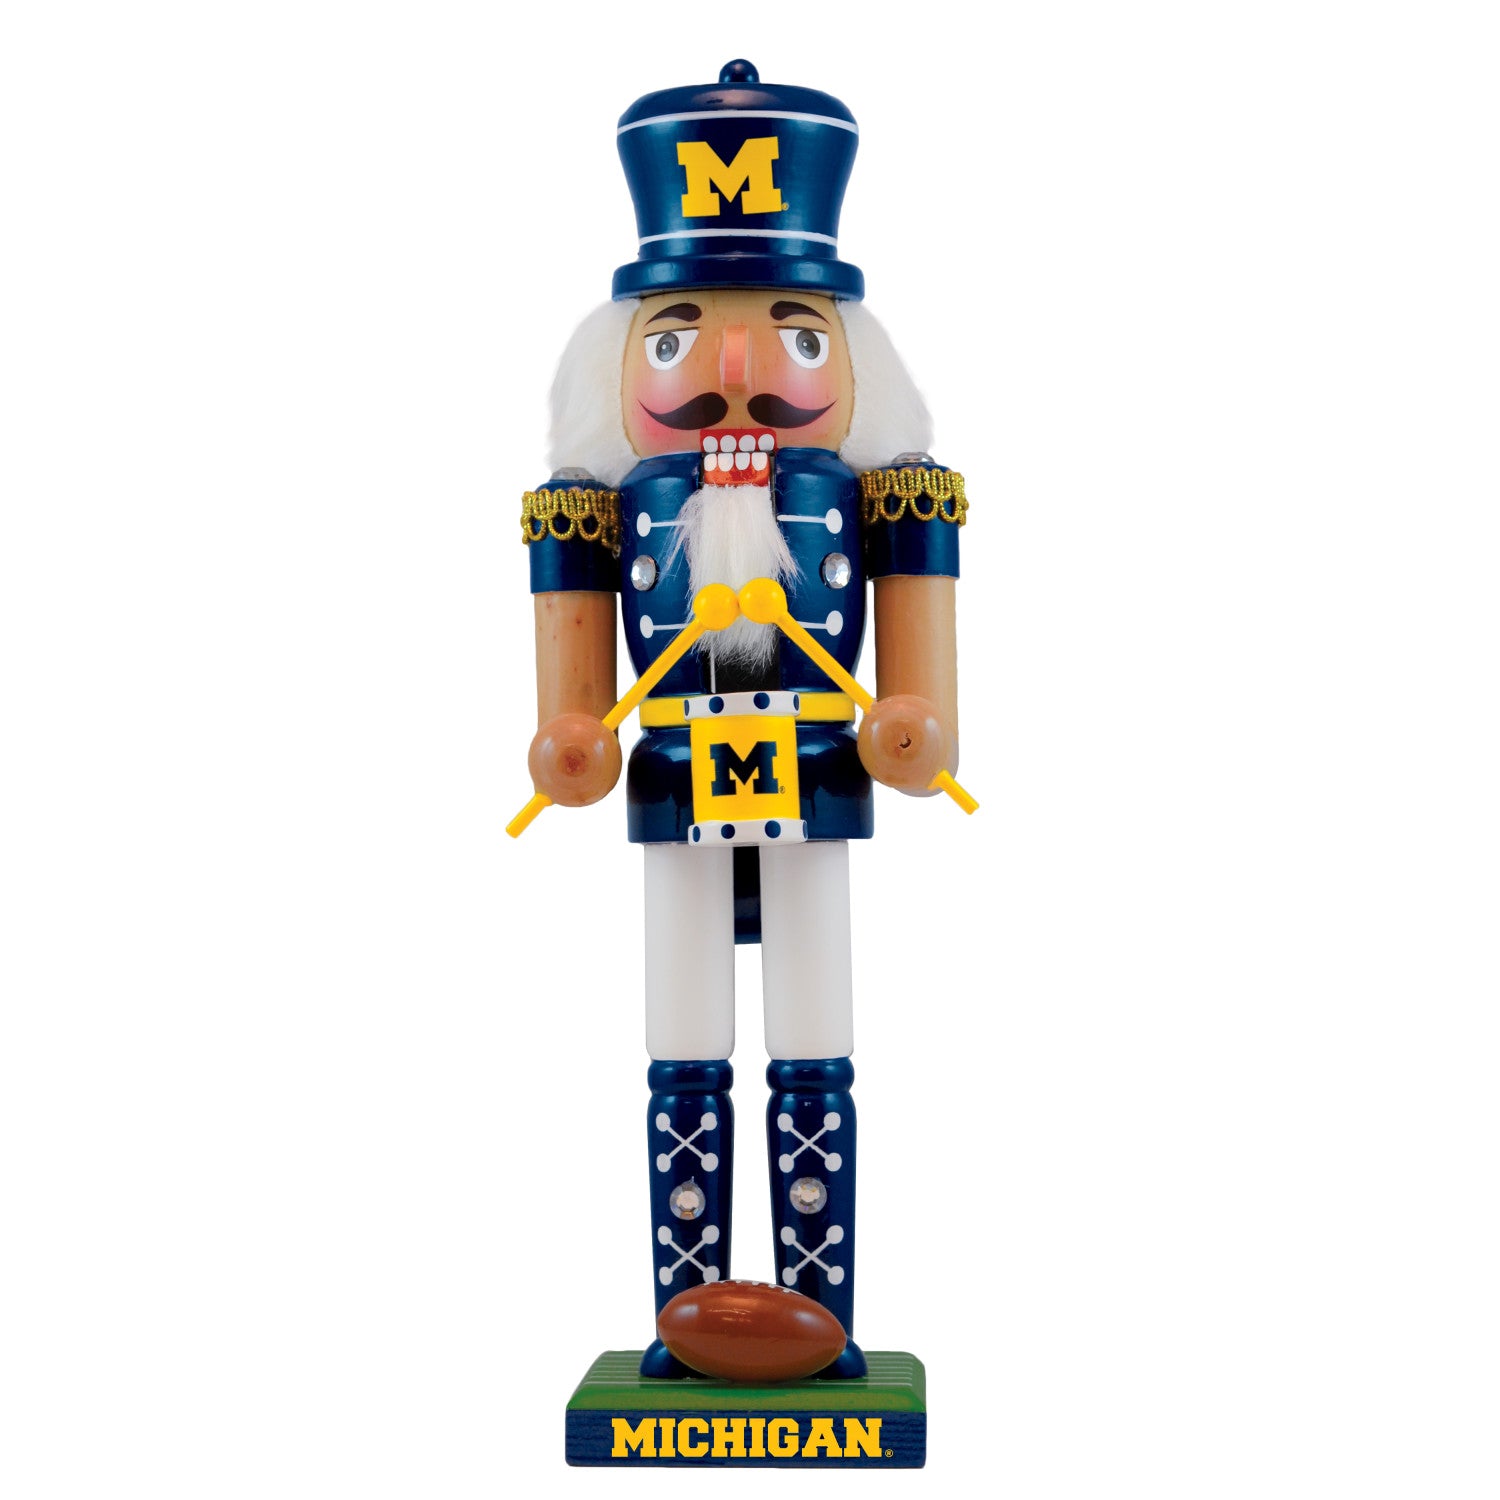 Michigan Wolverines - Collectible Nutcracker